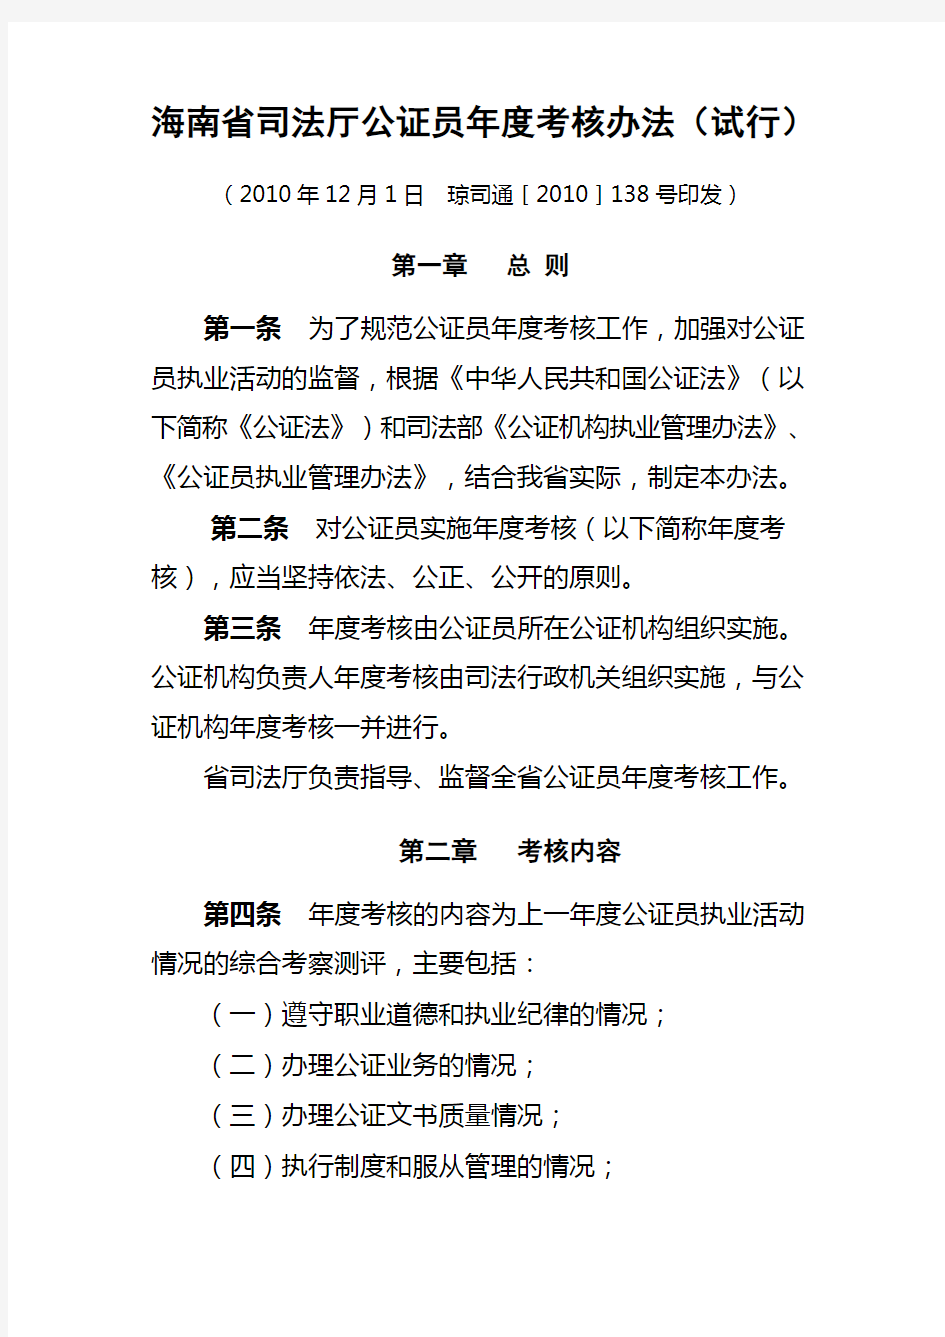 海南省司法厅公证员年度考核办法(试行)